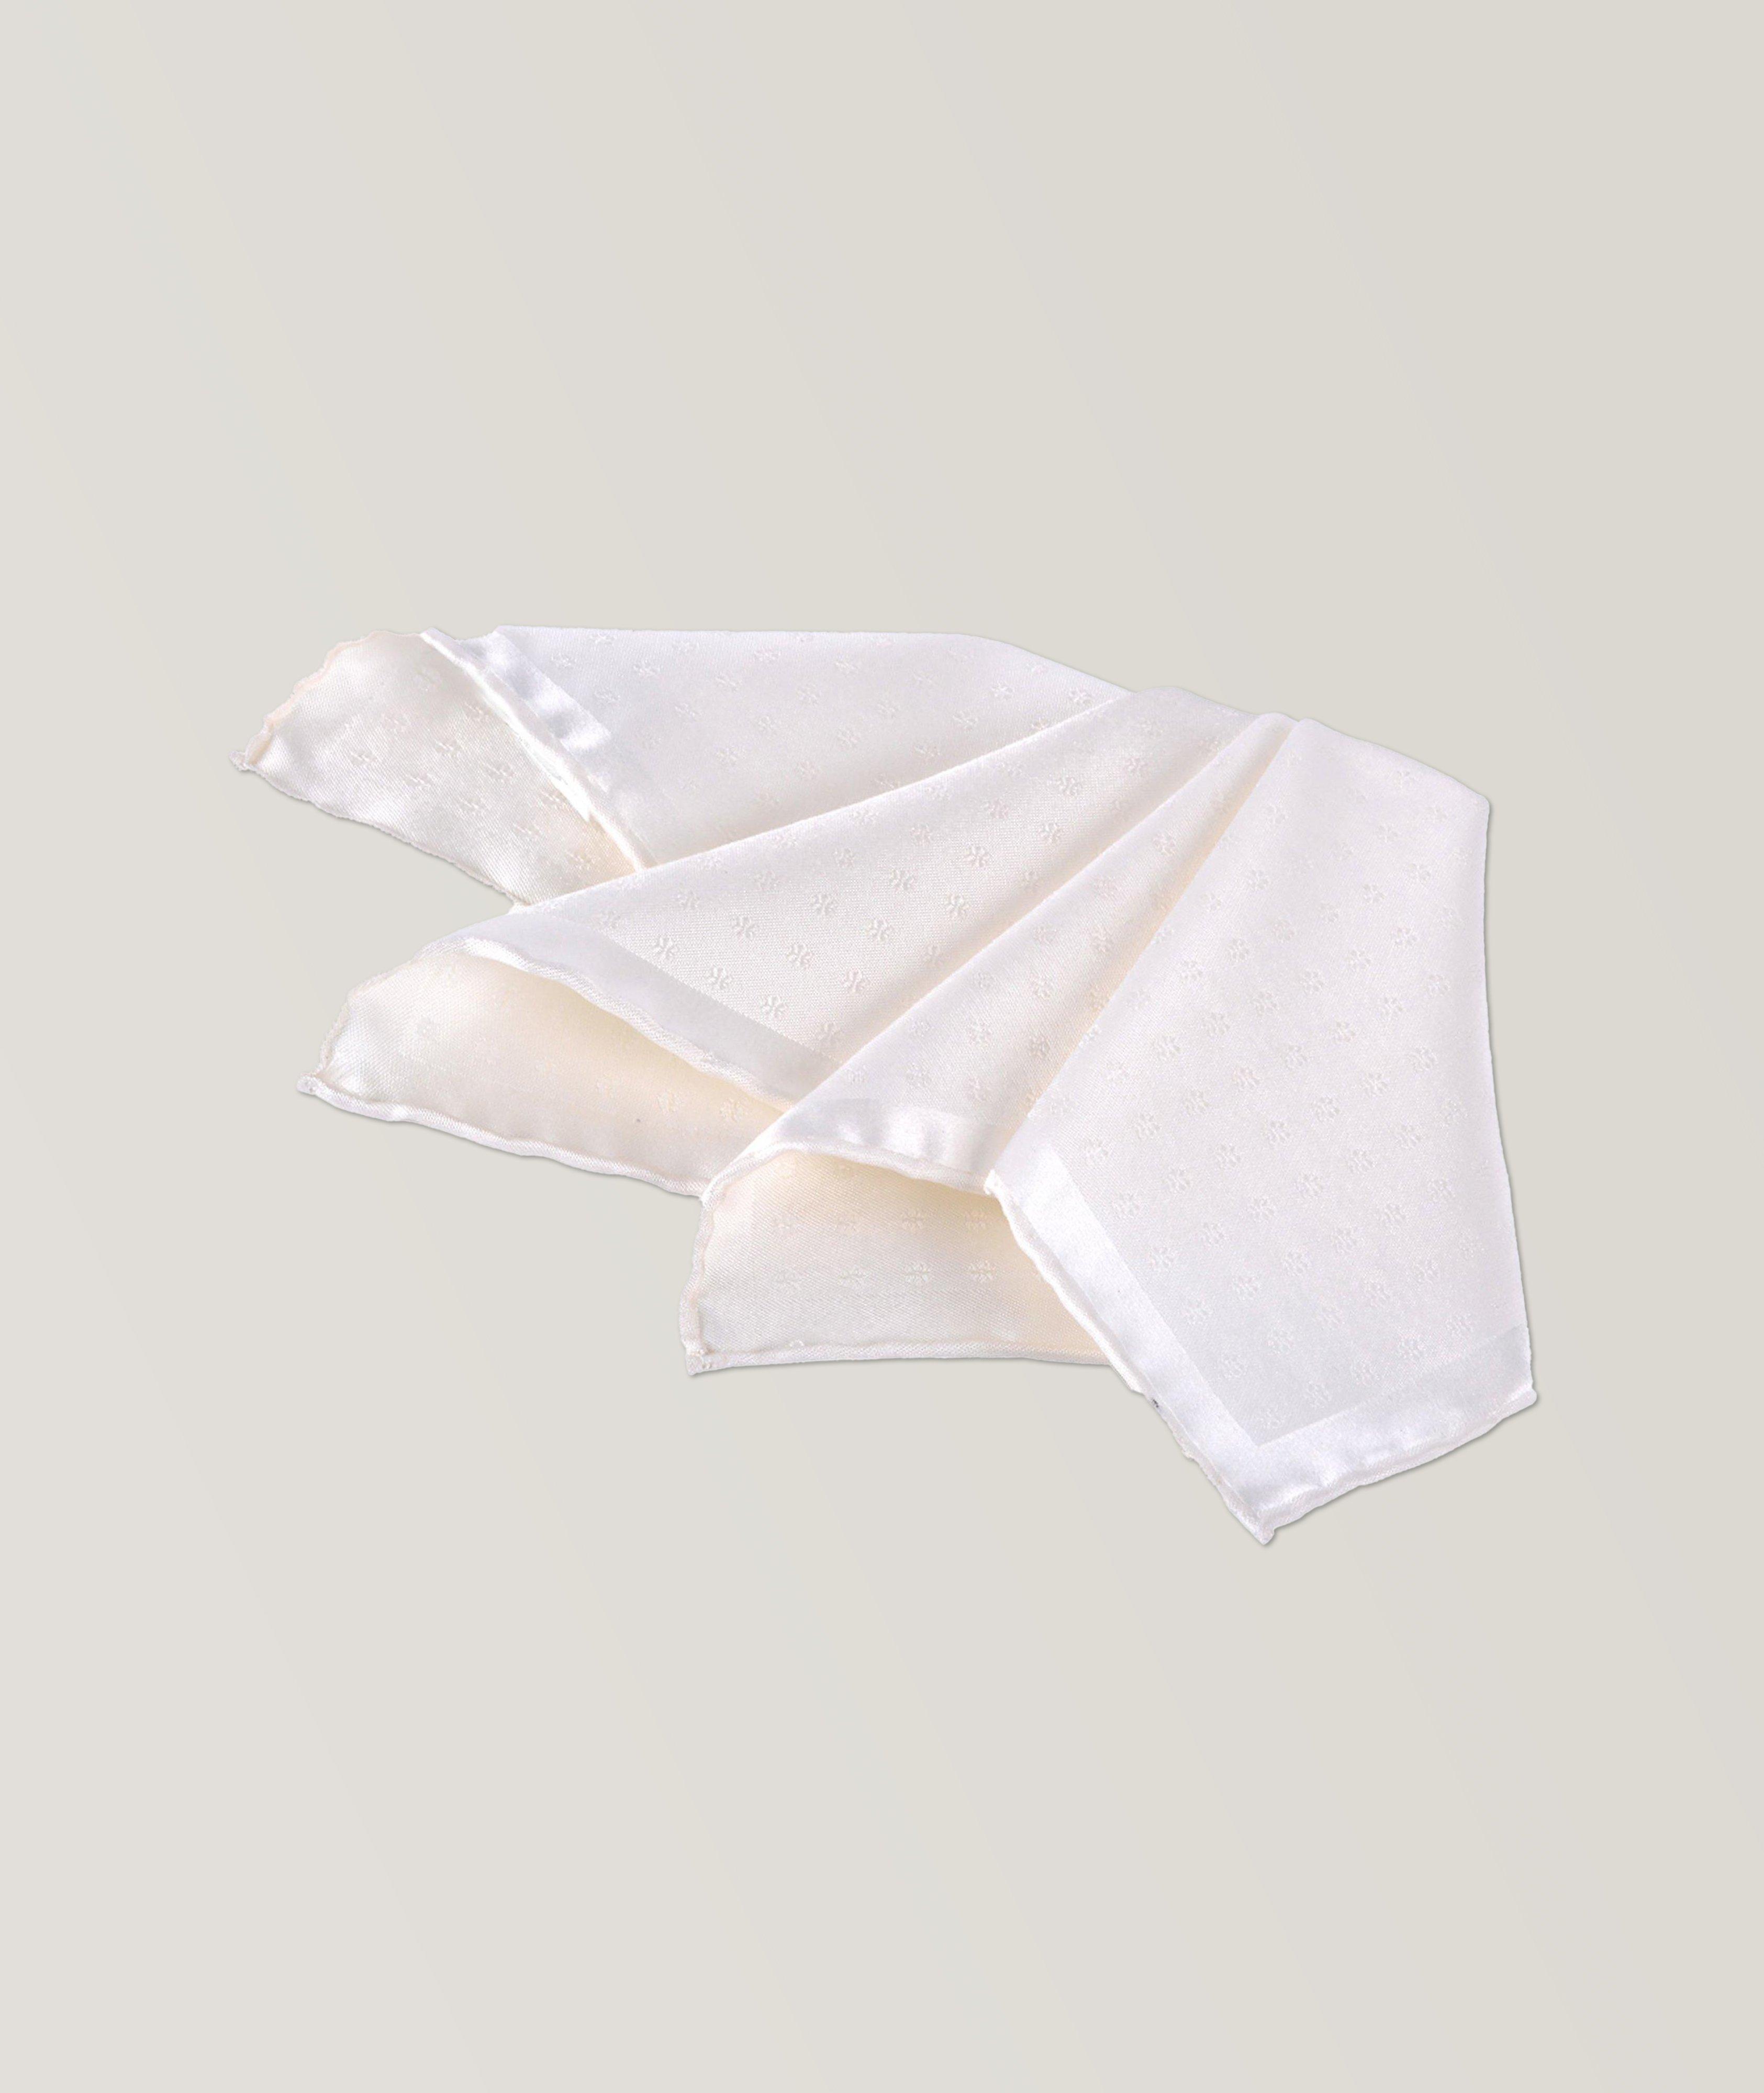 Tonal Micro Neat Silk Jacquard Handkerchief image 0